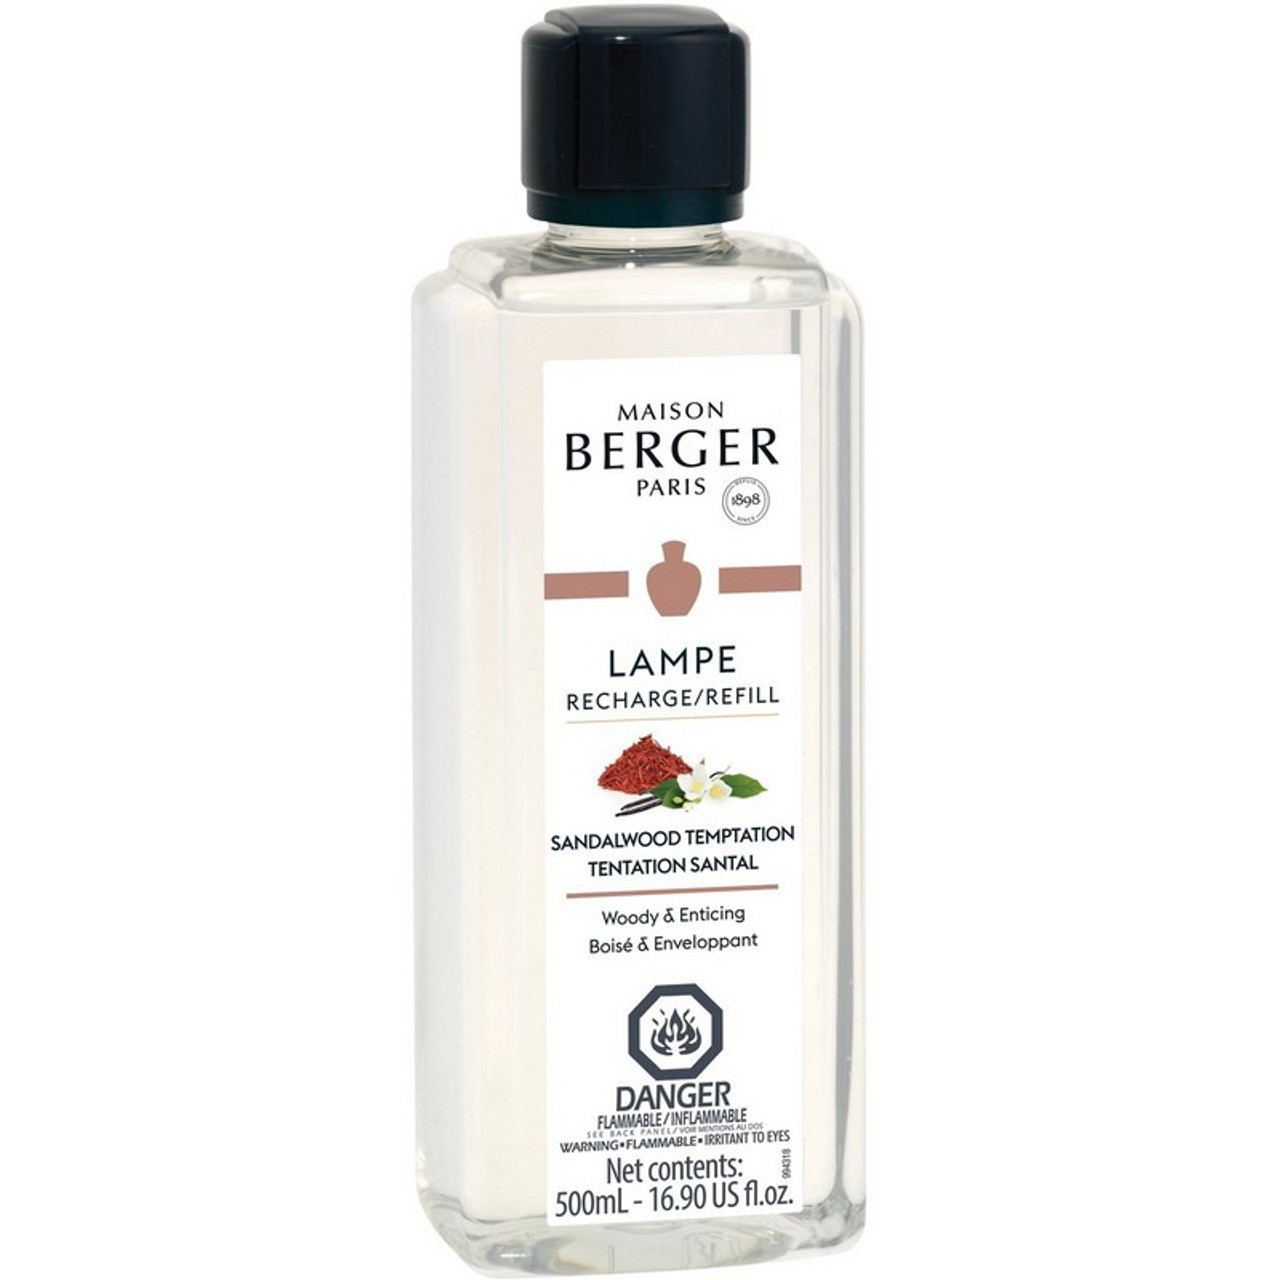 Bougie parfumée Lolita Lempicka Transparente - Maison Berger • Maison  Berger Paris